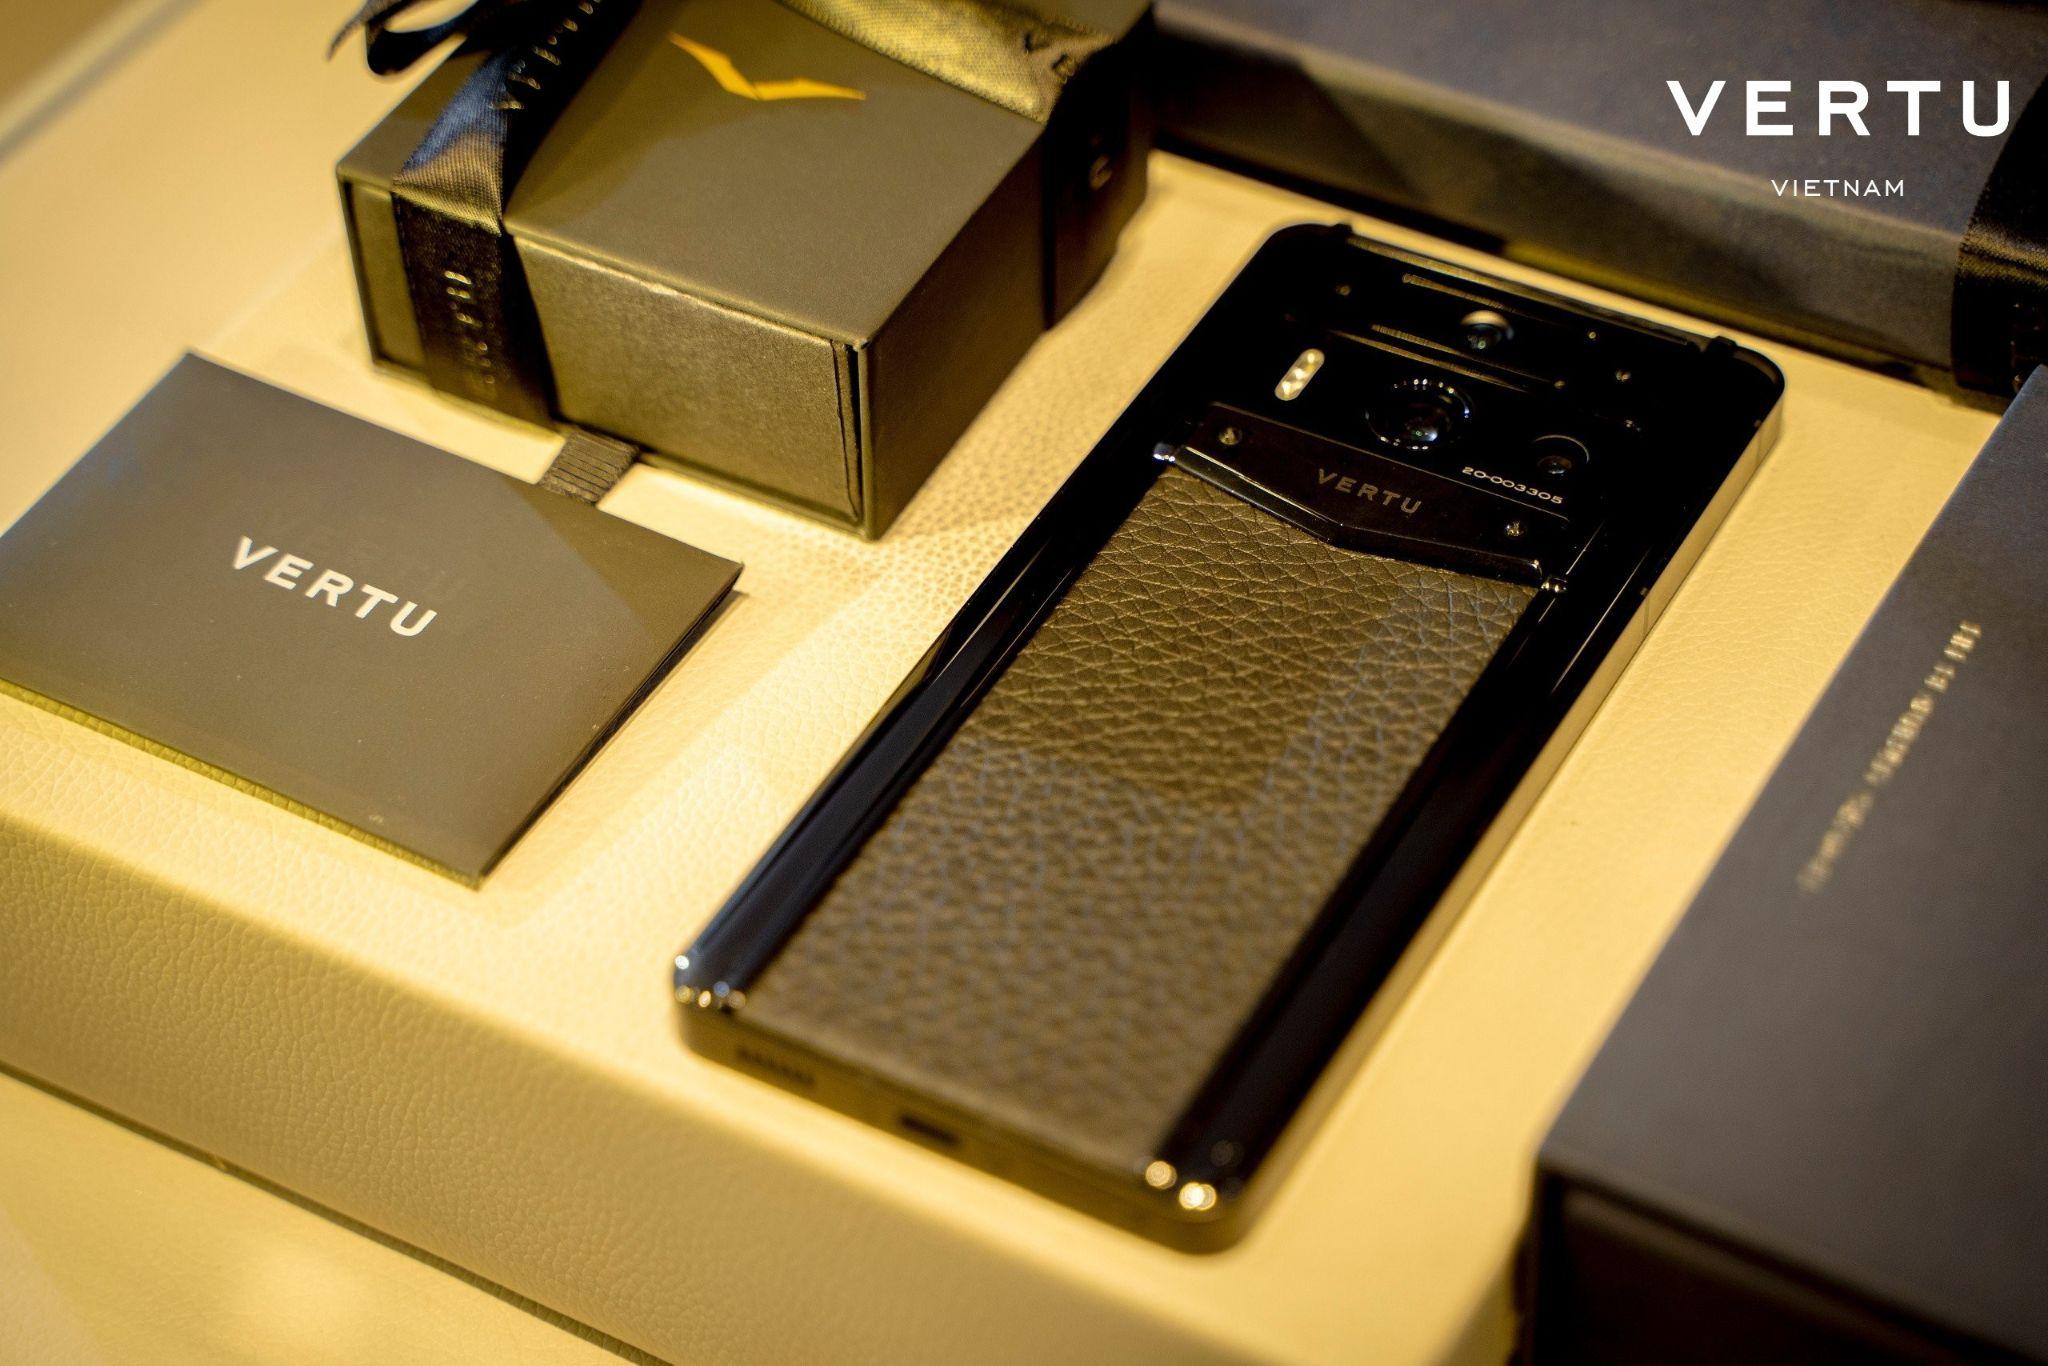 Mỗi chiếc điện thoại của Vertu đều được chế tác thủ công tỉ mỉ bởi những nghệ nhân hàng đầu thế giới.